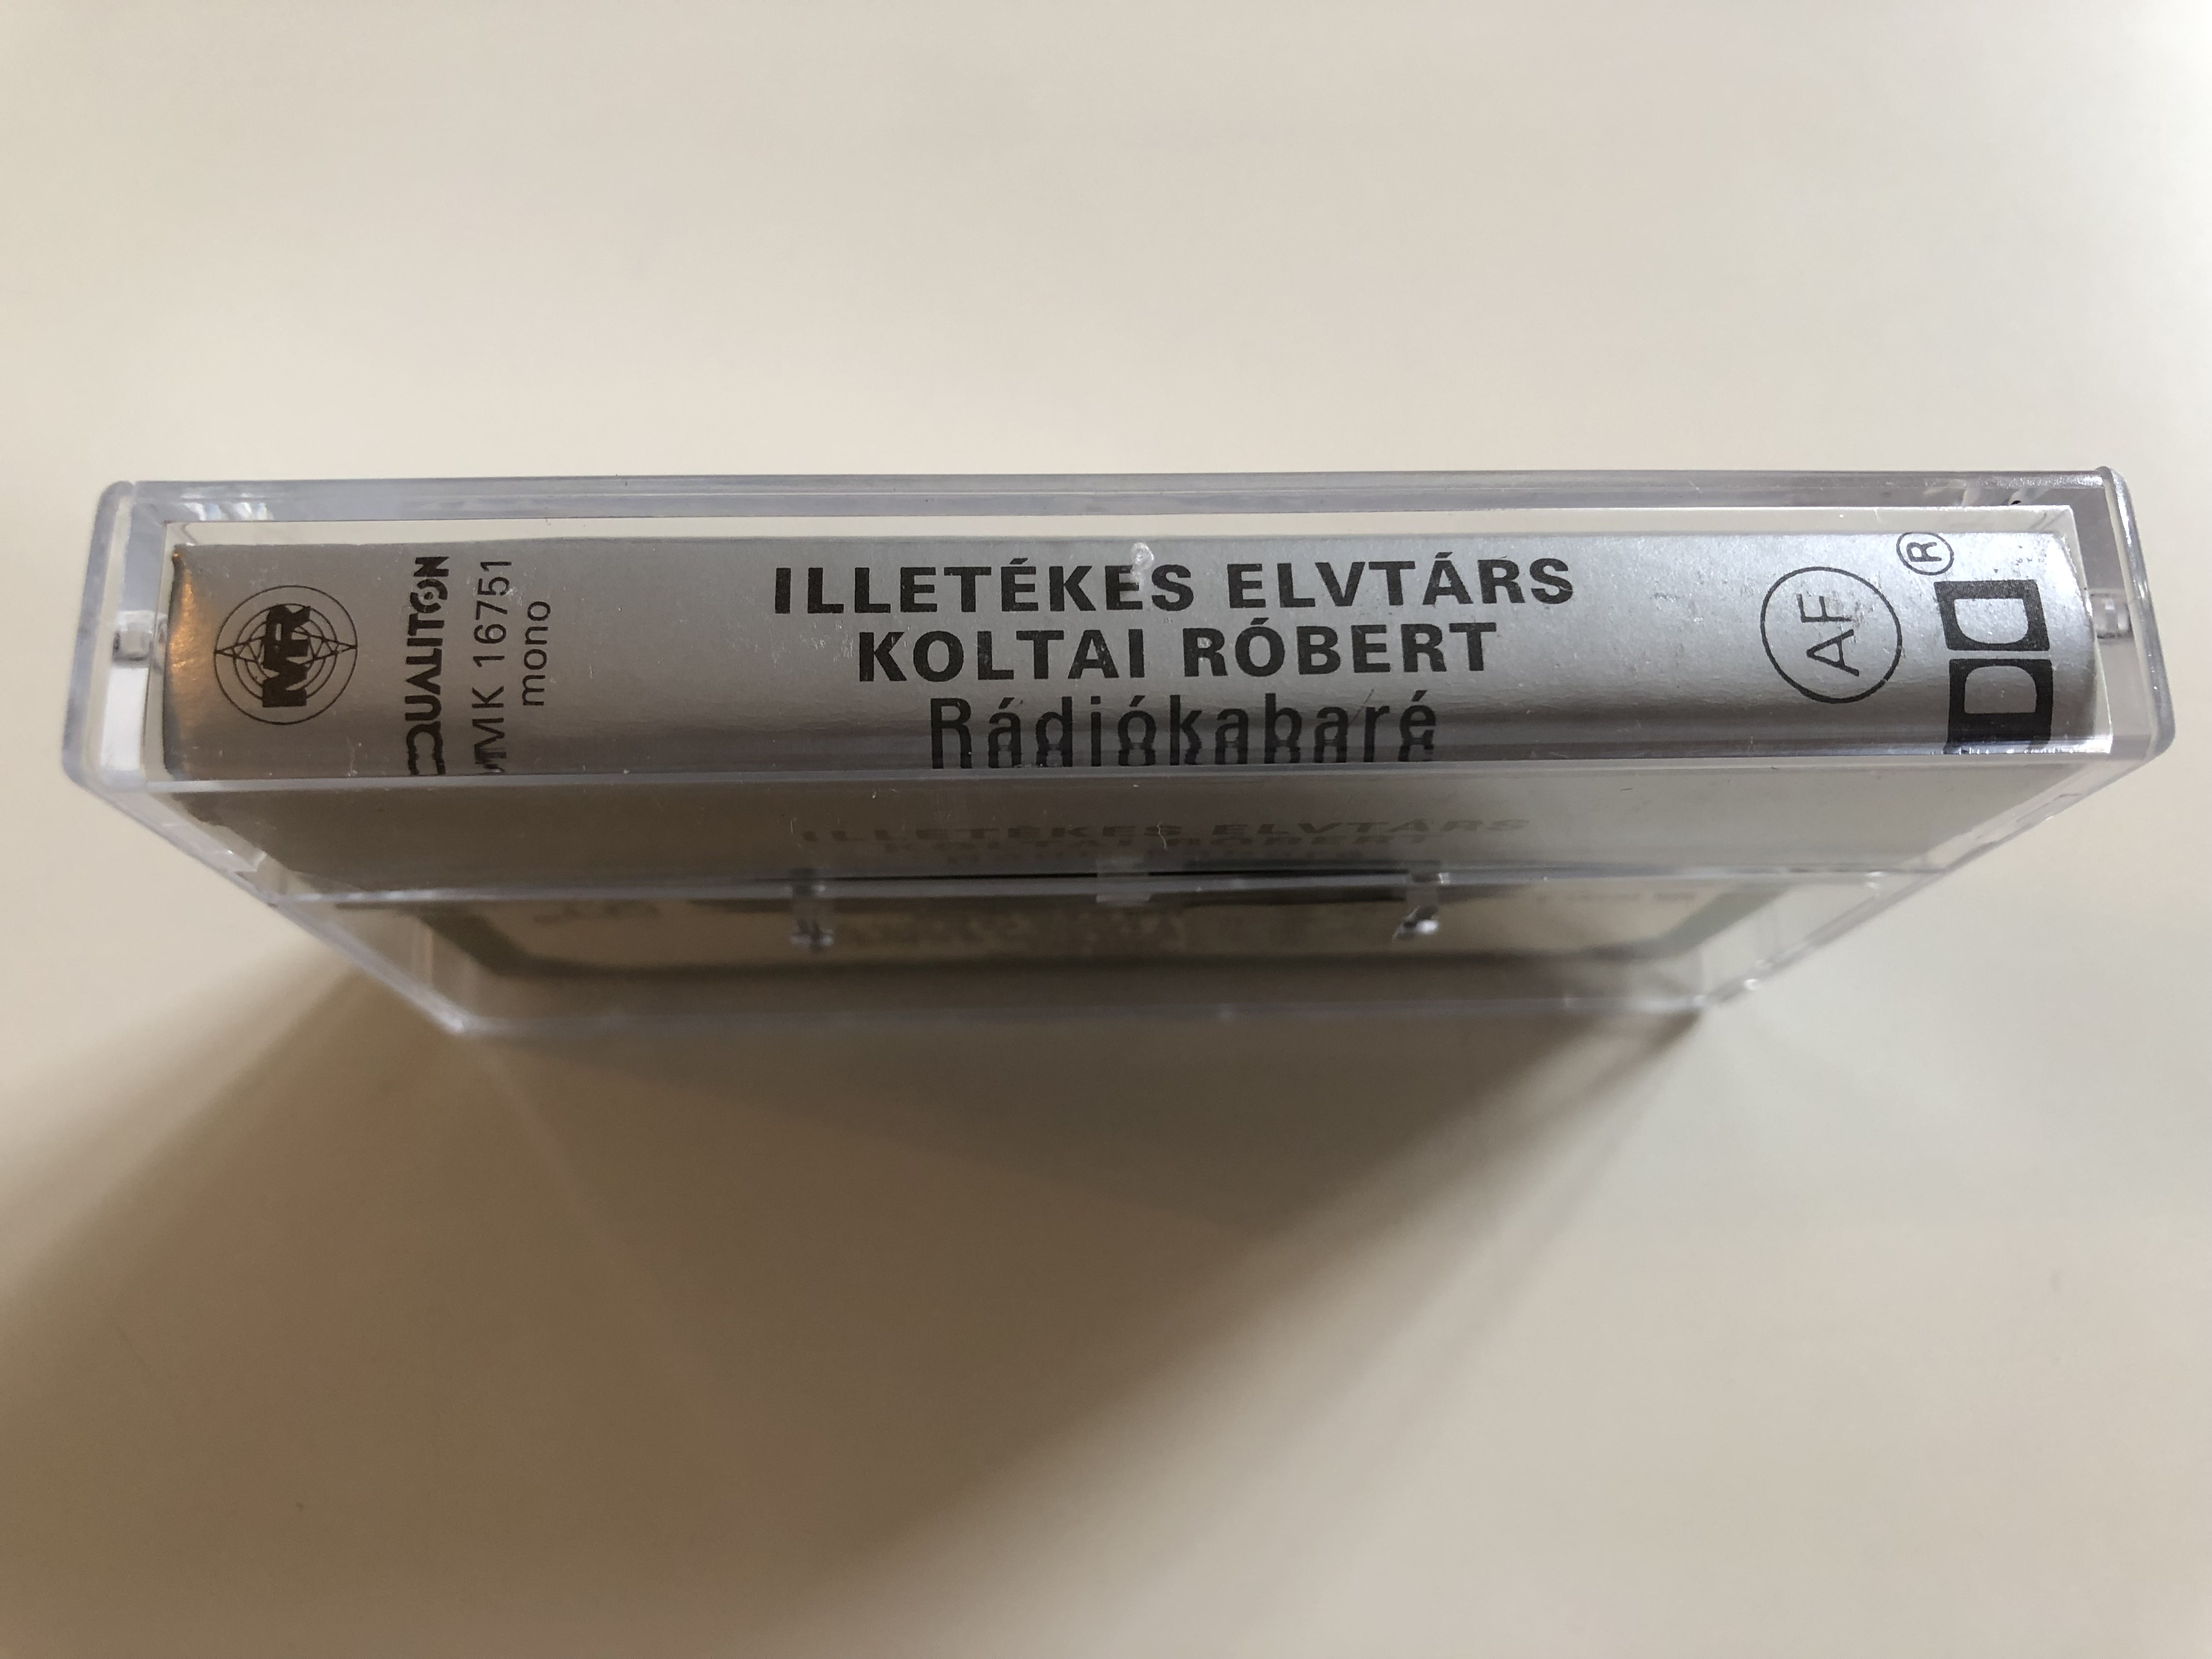 illet-kes-elvt-rs-150-forint-koltai-r-bert-radiokabare-qualiton-cassette-mono-mk-16751-4-.jpg